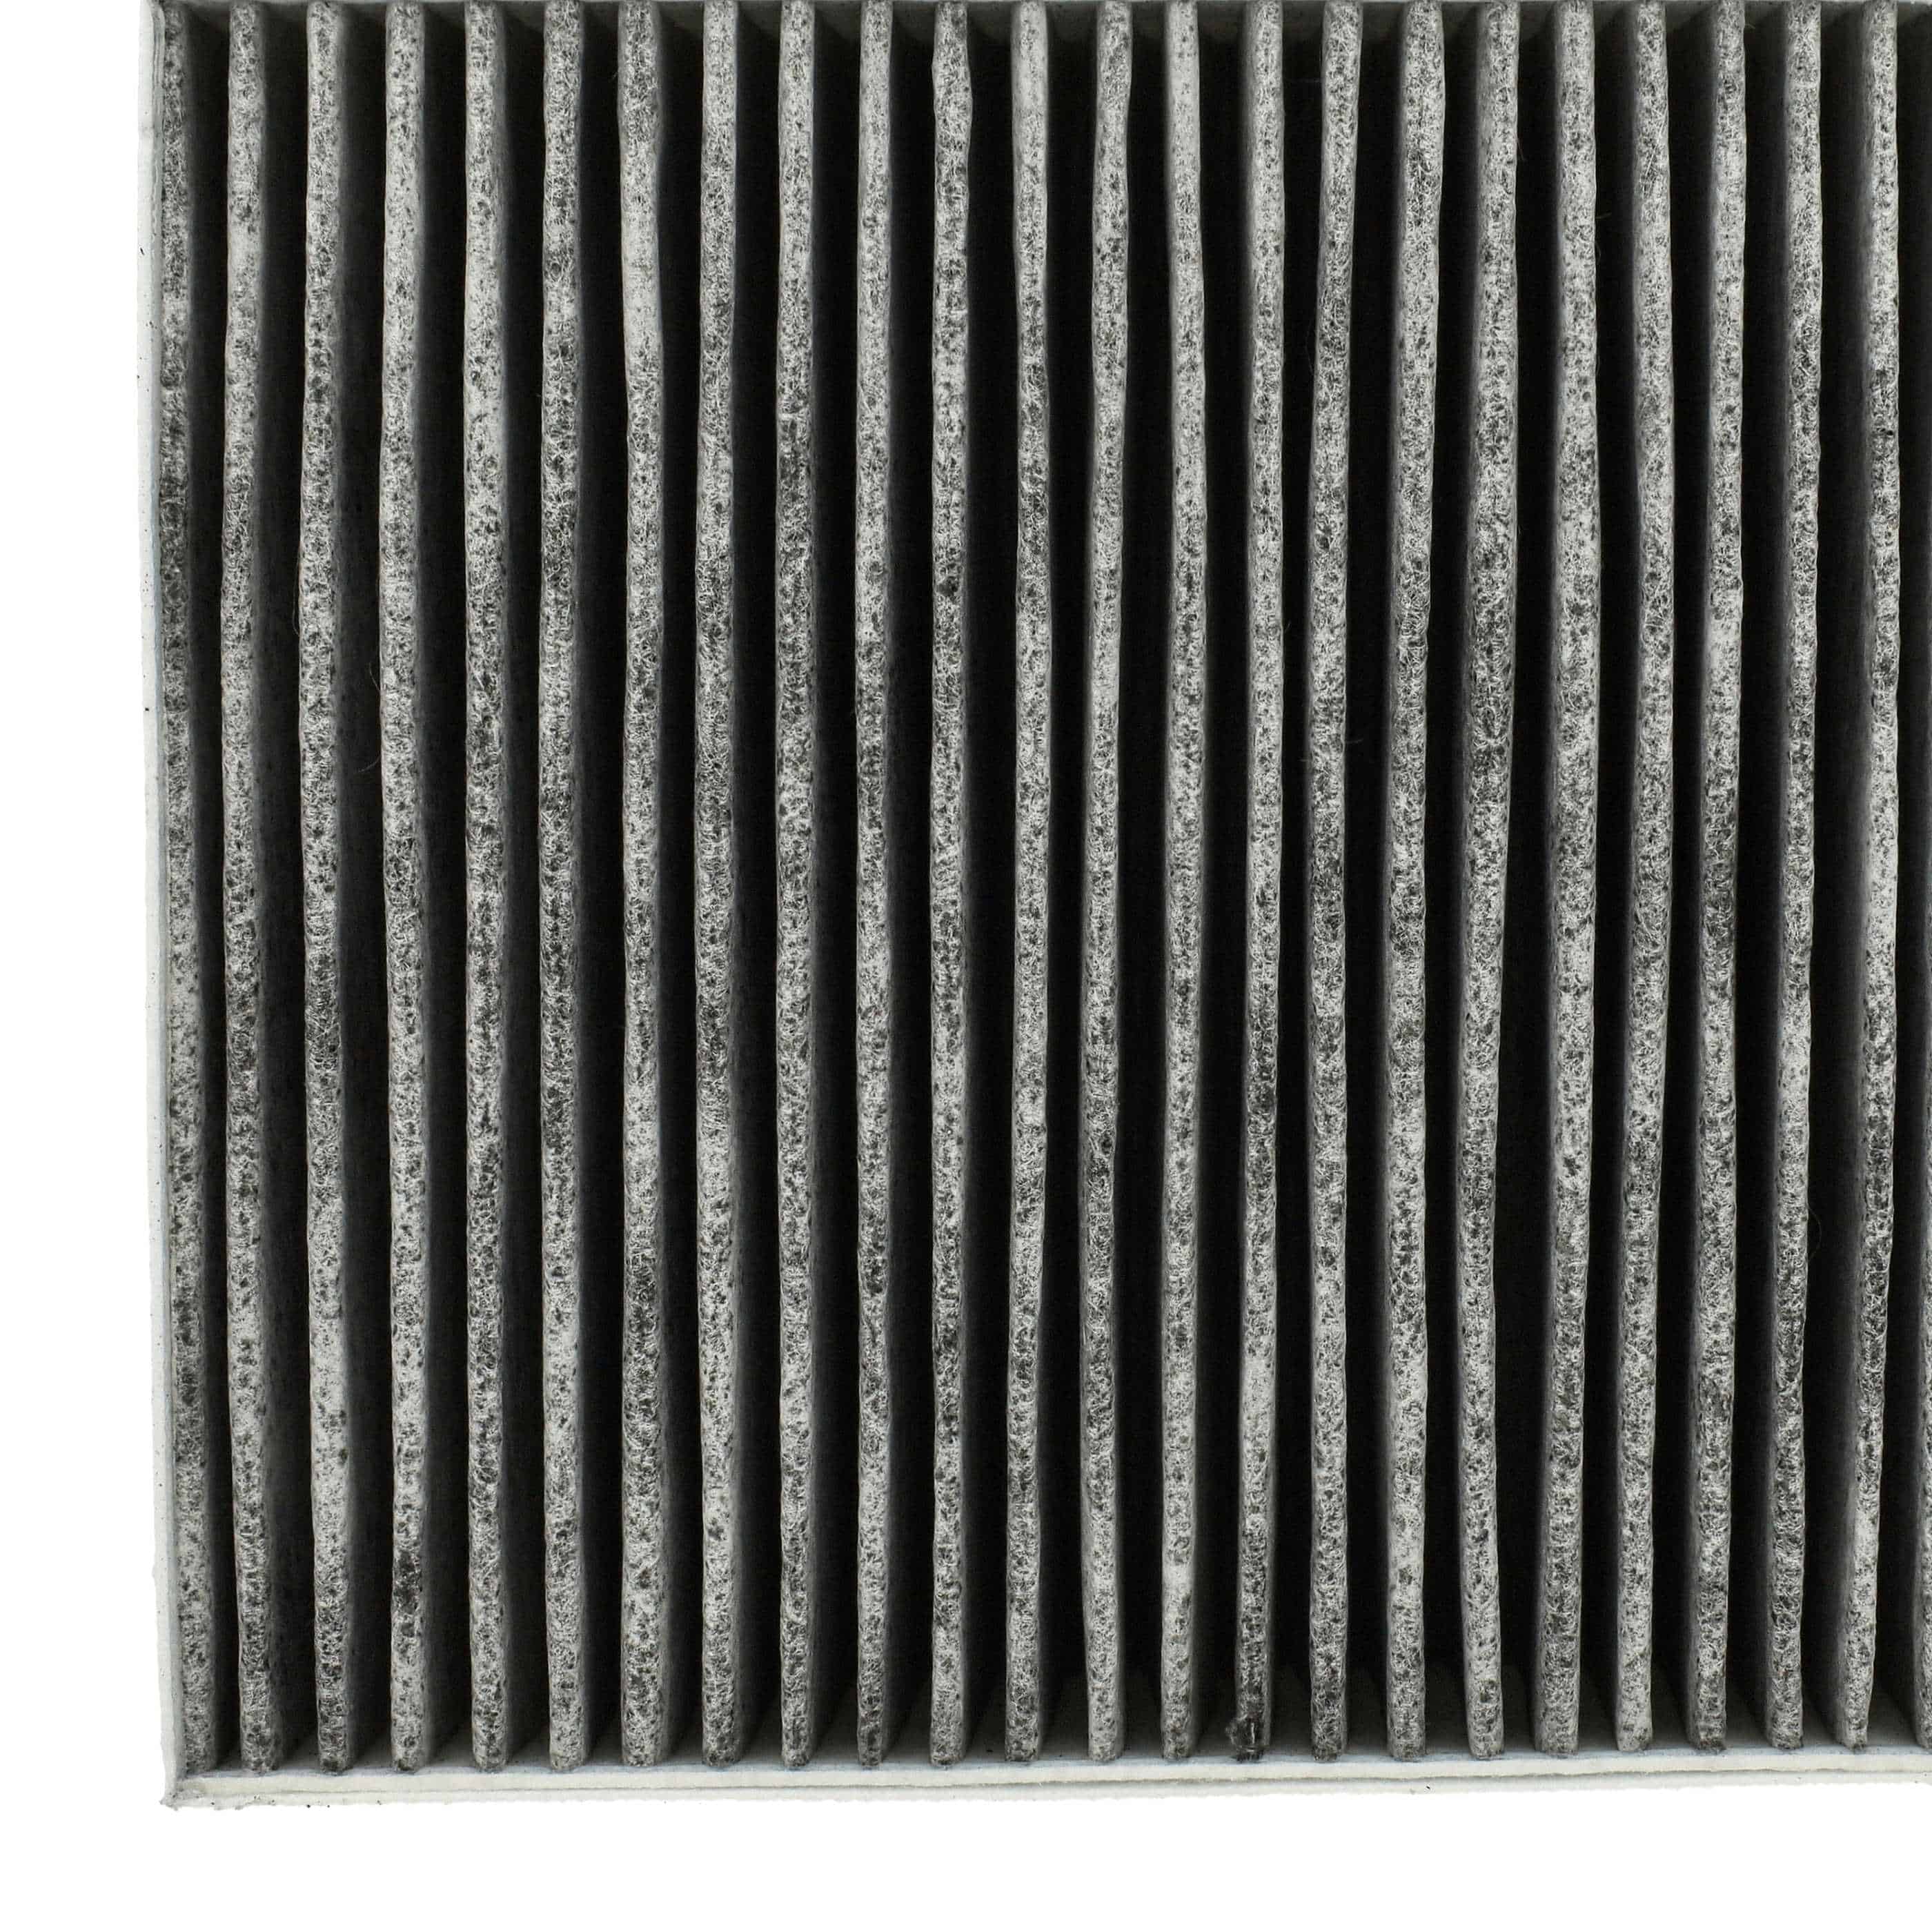 2x Filtr węglowy do okapu Bosch zamiennik Bosch DZZ1XX1B6, 00678460, DSZ5201 - 22,7 x 18,9 x 10 cm